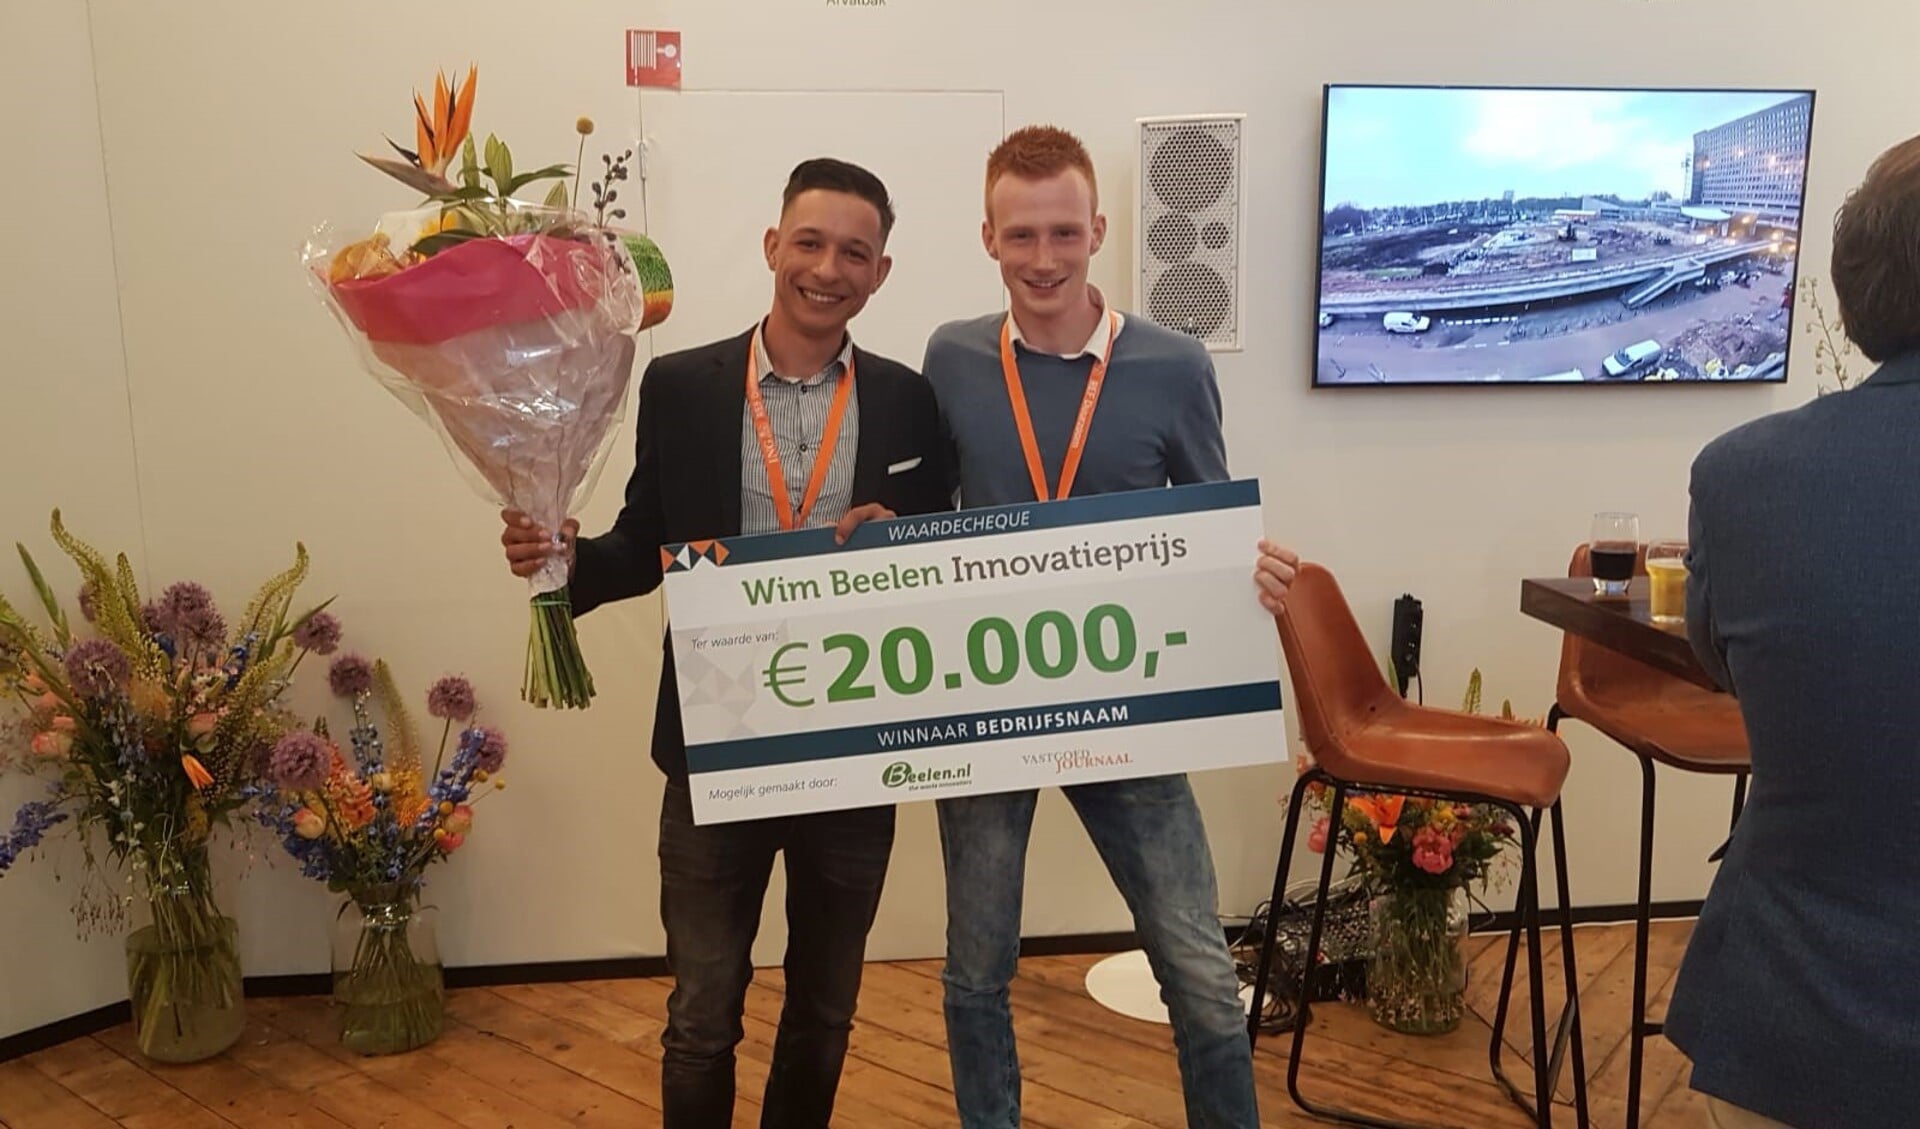 Bouwkundestudenten Donny Hoogendorp en Juriën Veenman ontvangen de Wim Beelen Innovatieprijs 2018. (Foto: aangeleverd) 